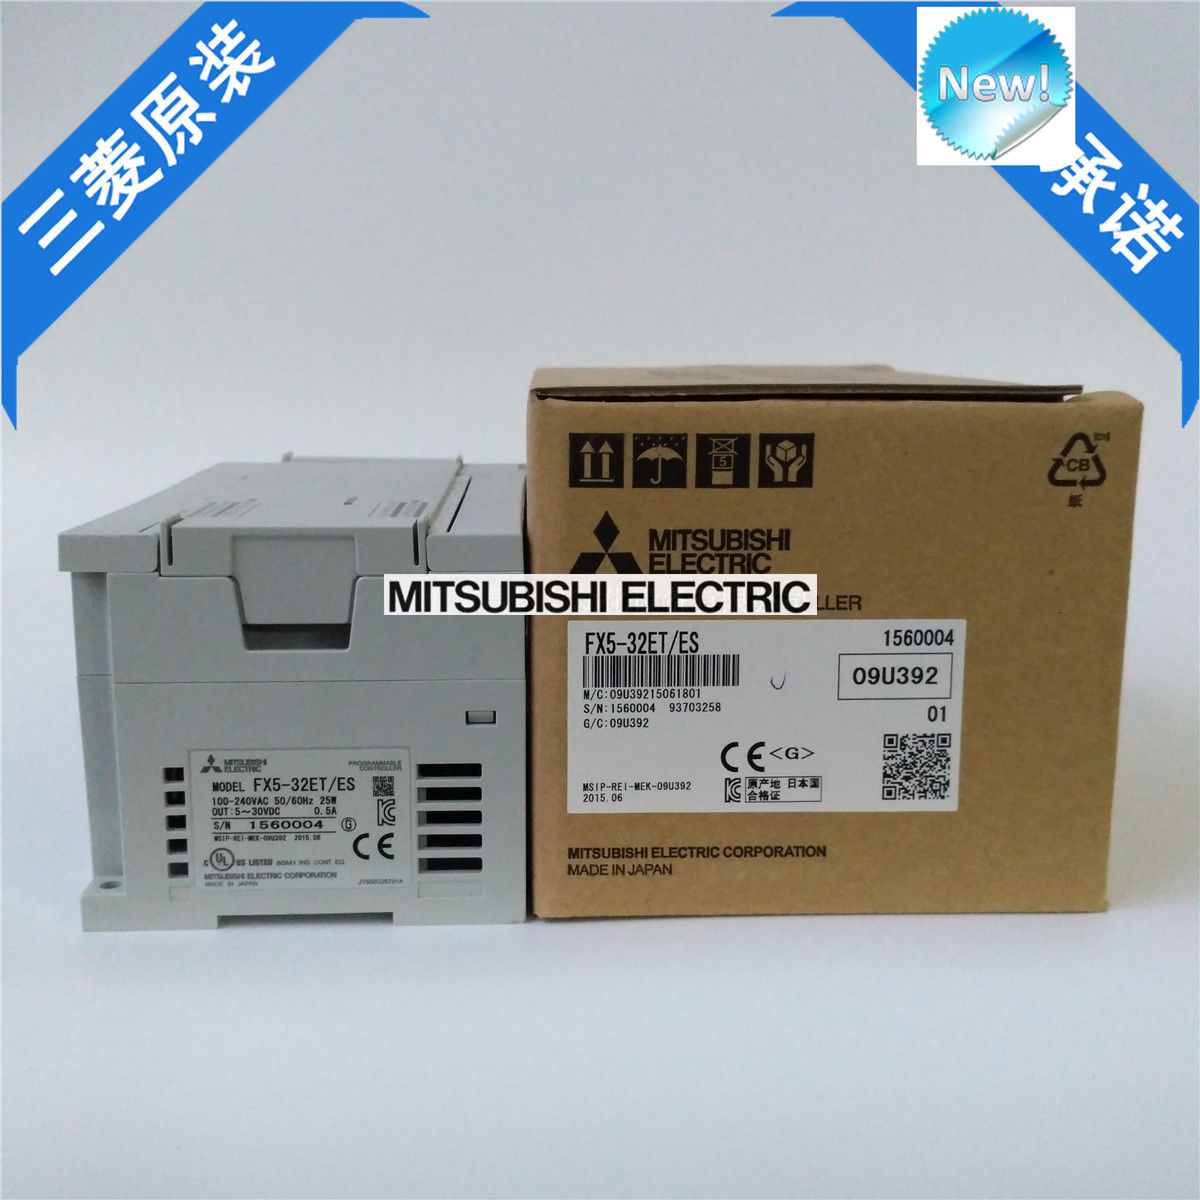 New Mitsubishi FX5-32ET/ES MELSEC IQ-F Series I/O Module